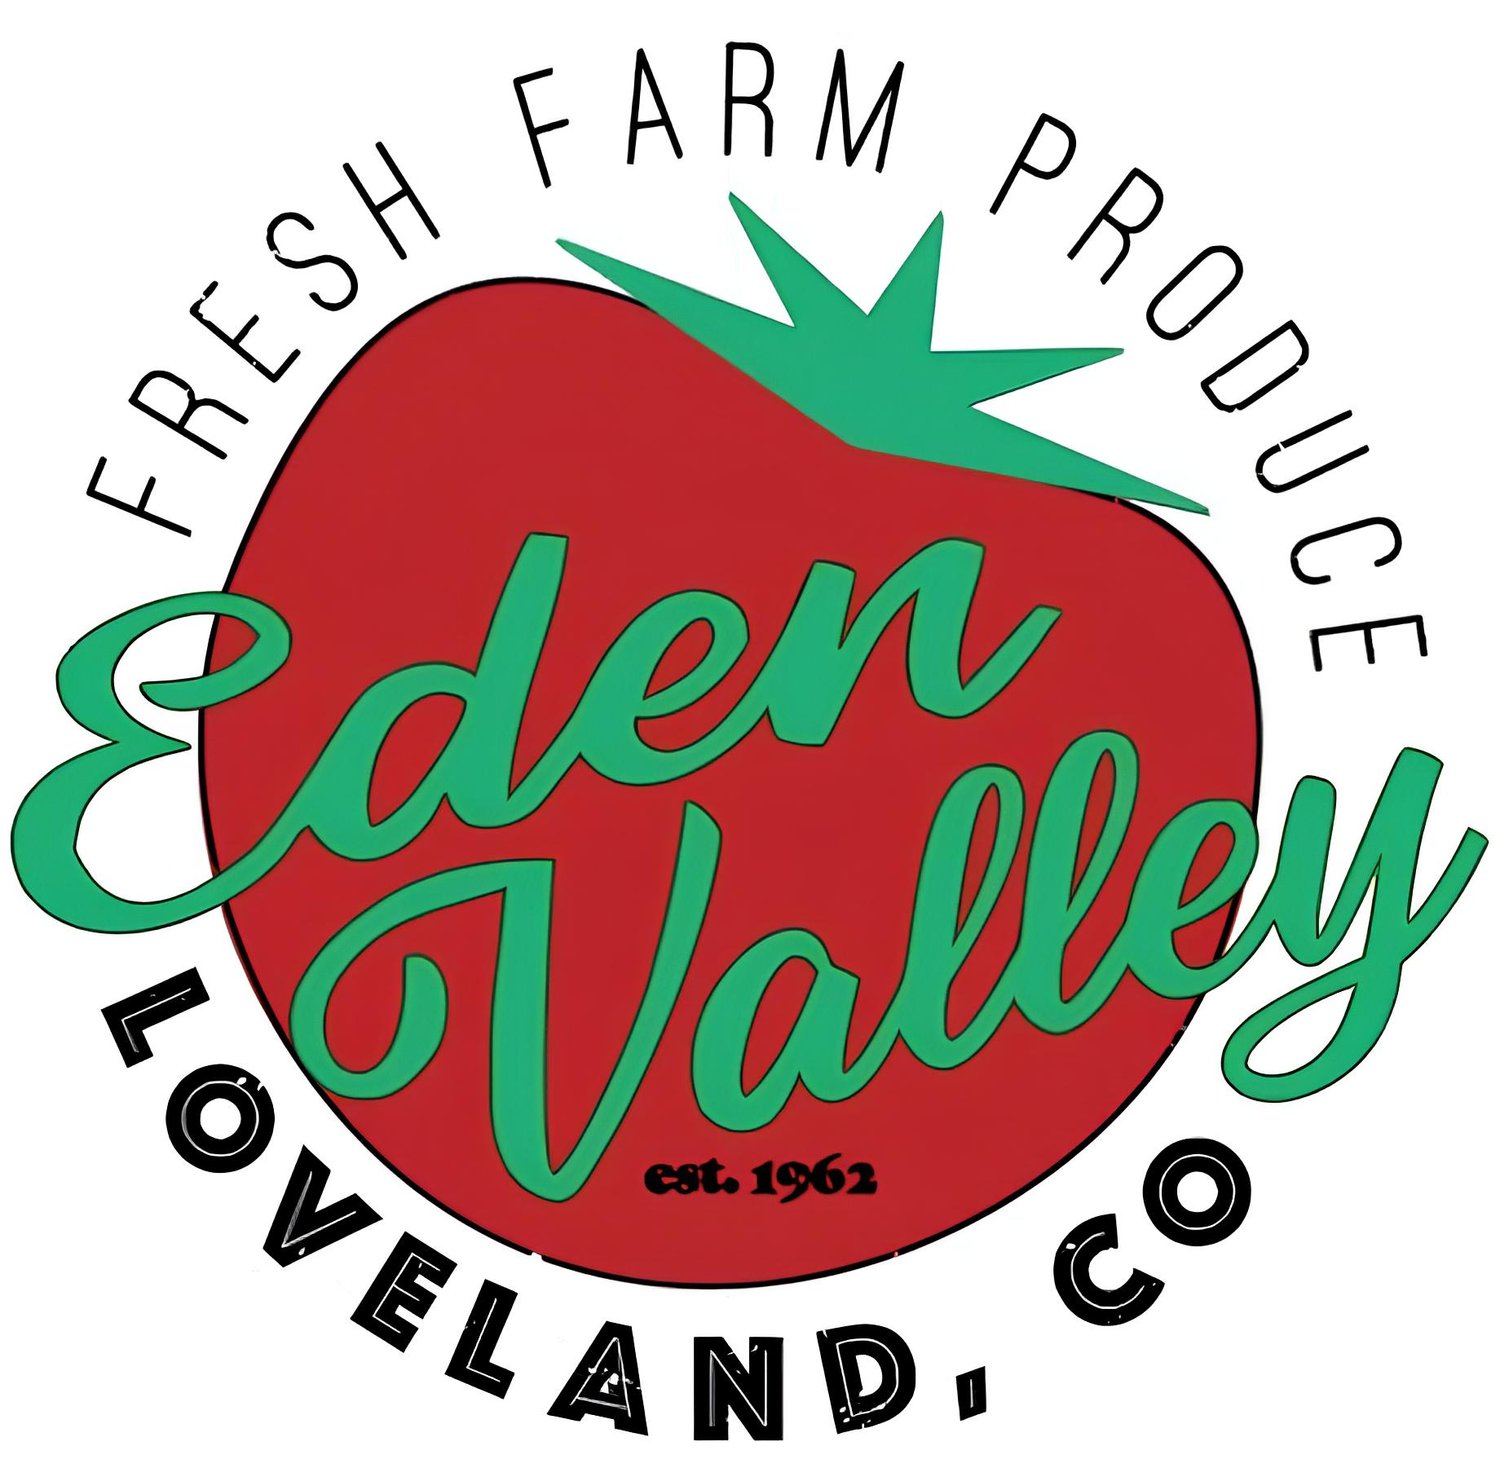 Eden Valley Farm